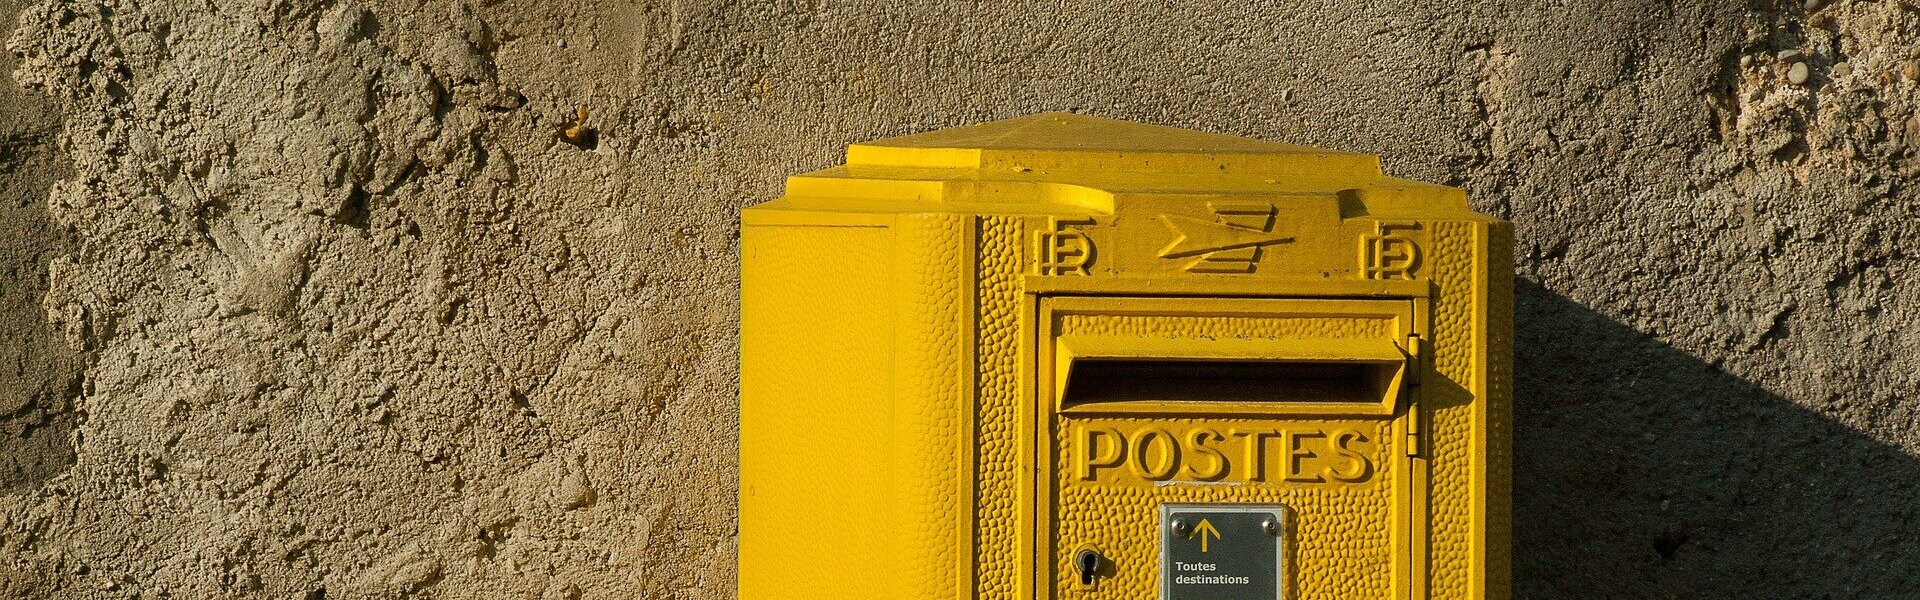 L'Agence postale communale de la Selle-sur-le-Bied dans le Loiret